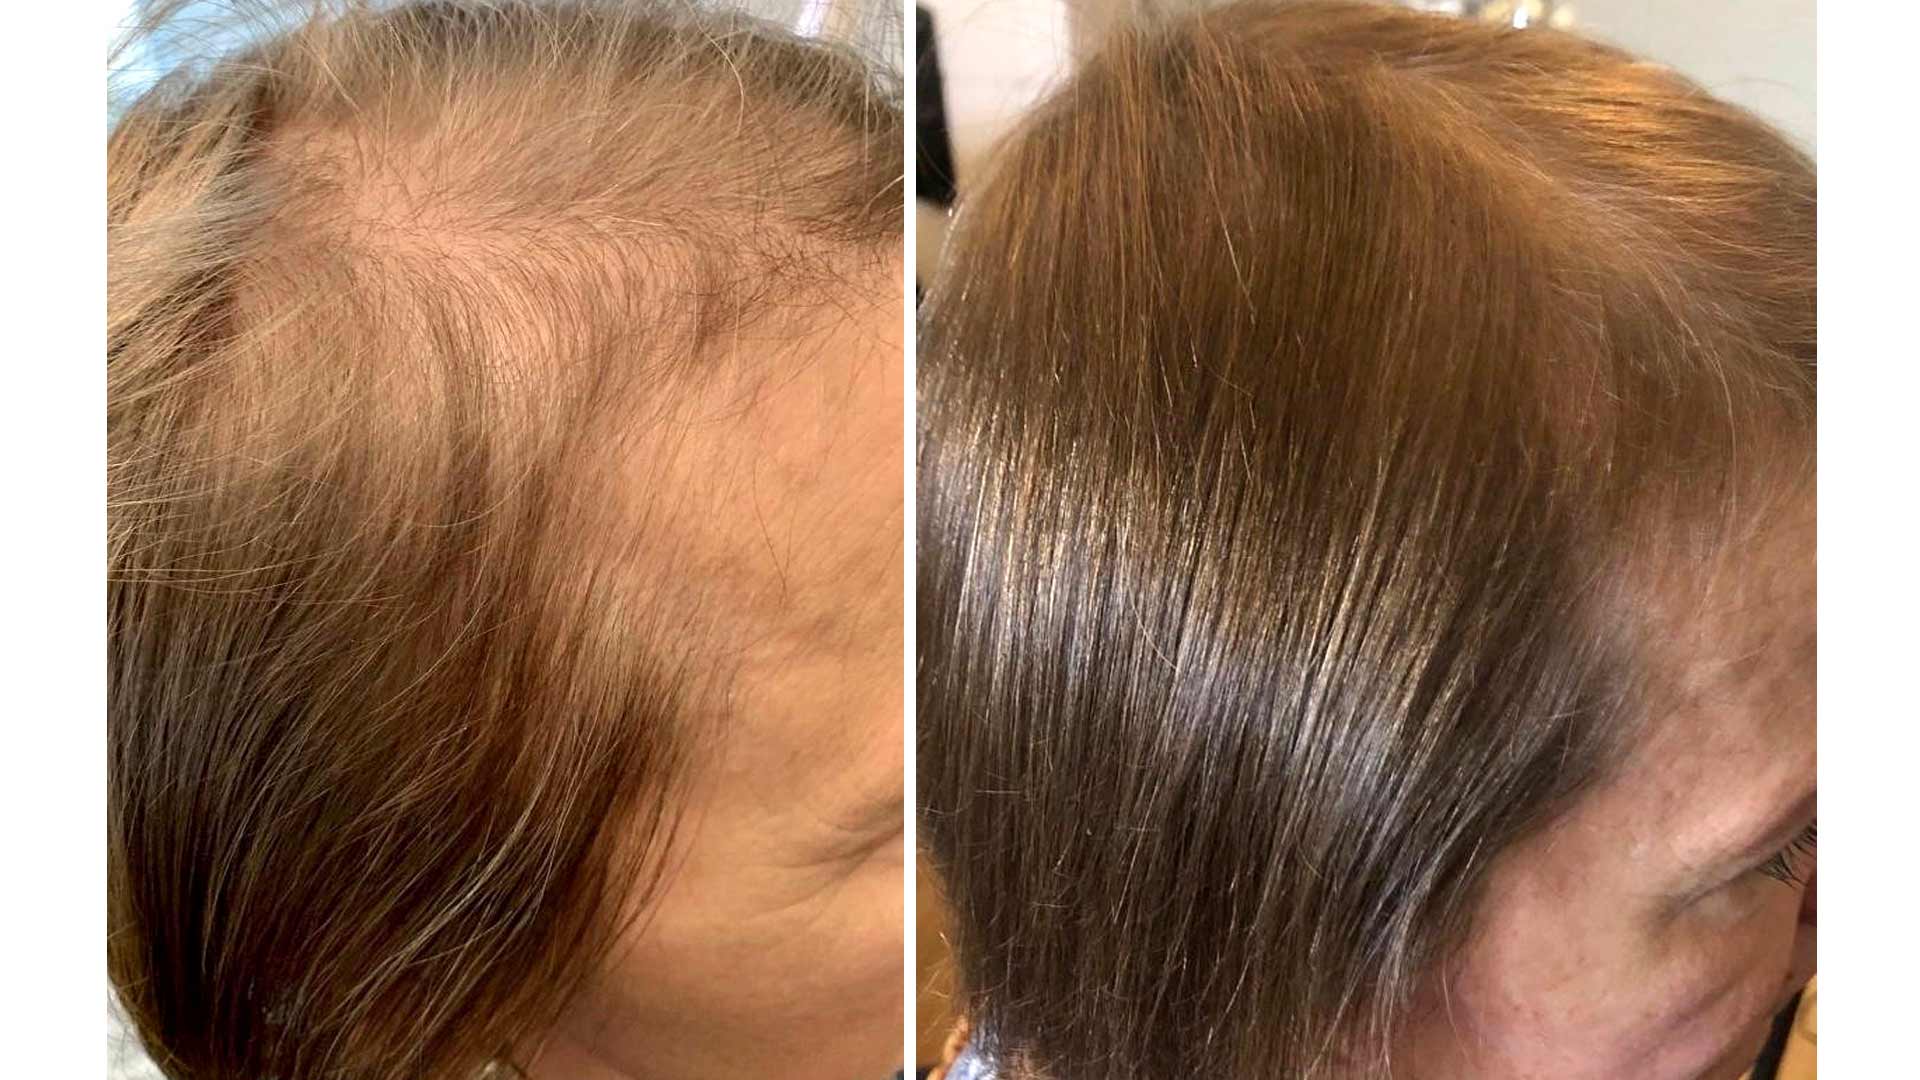 Hiukset ennen ja jälkeen.